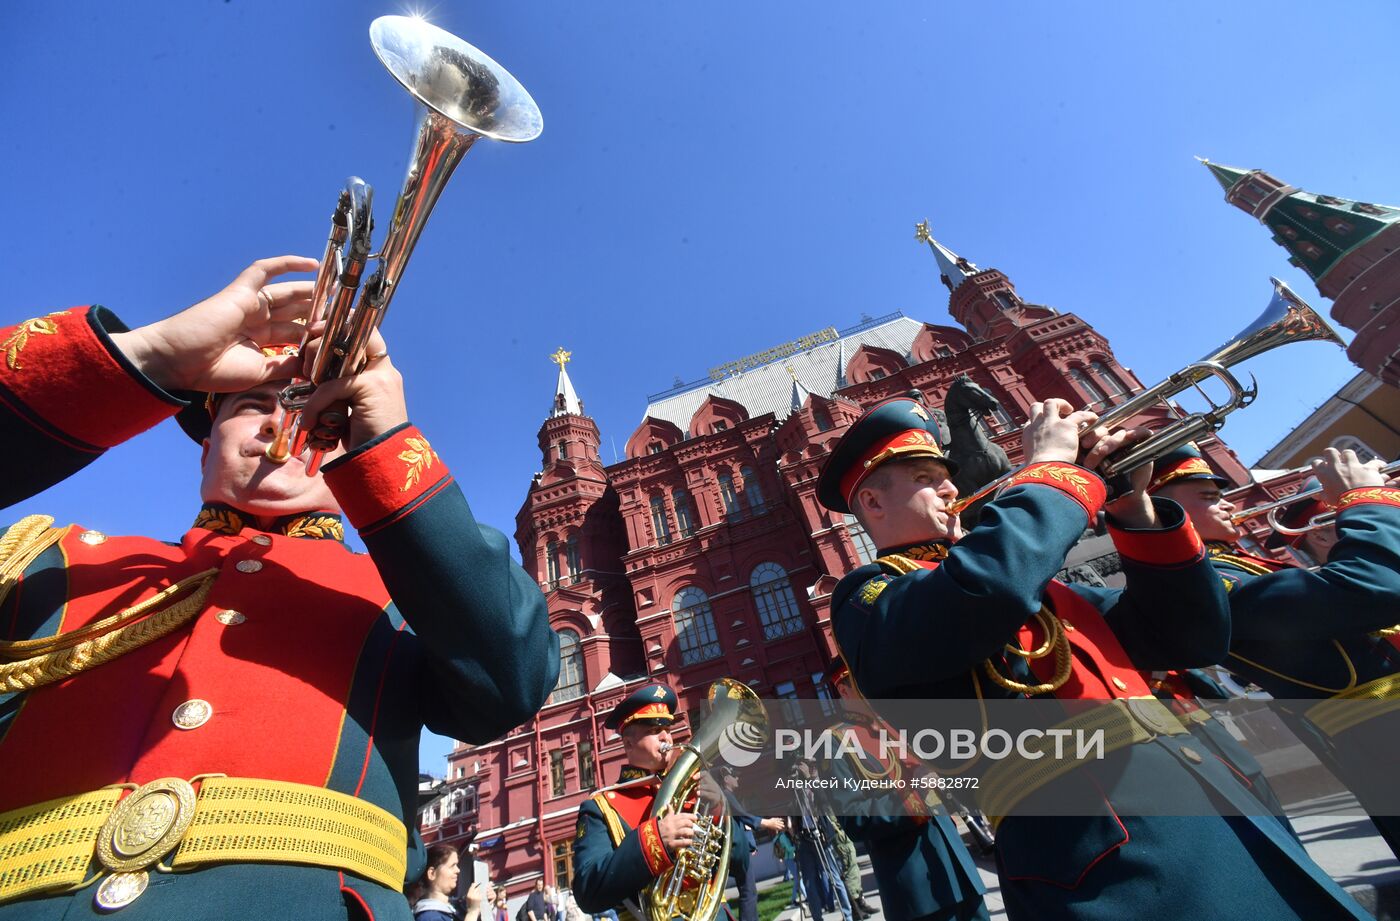 Открытие программы "Военные оркестры в парках"